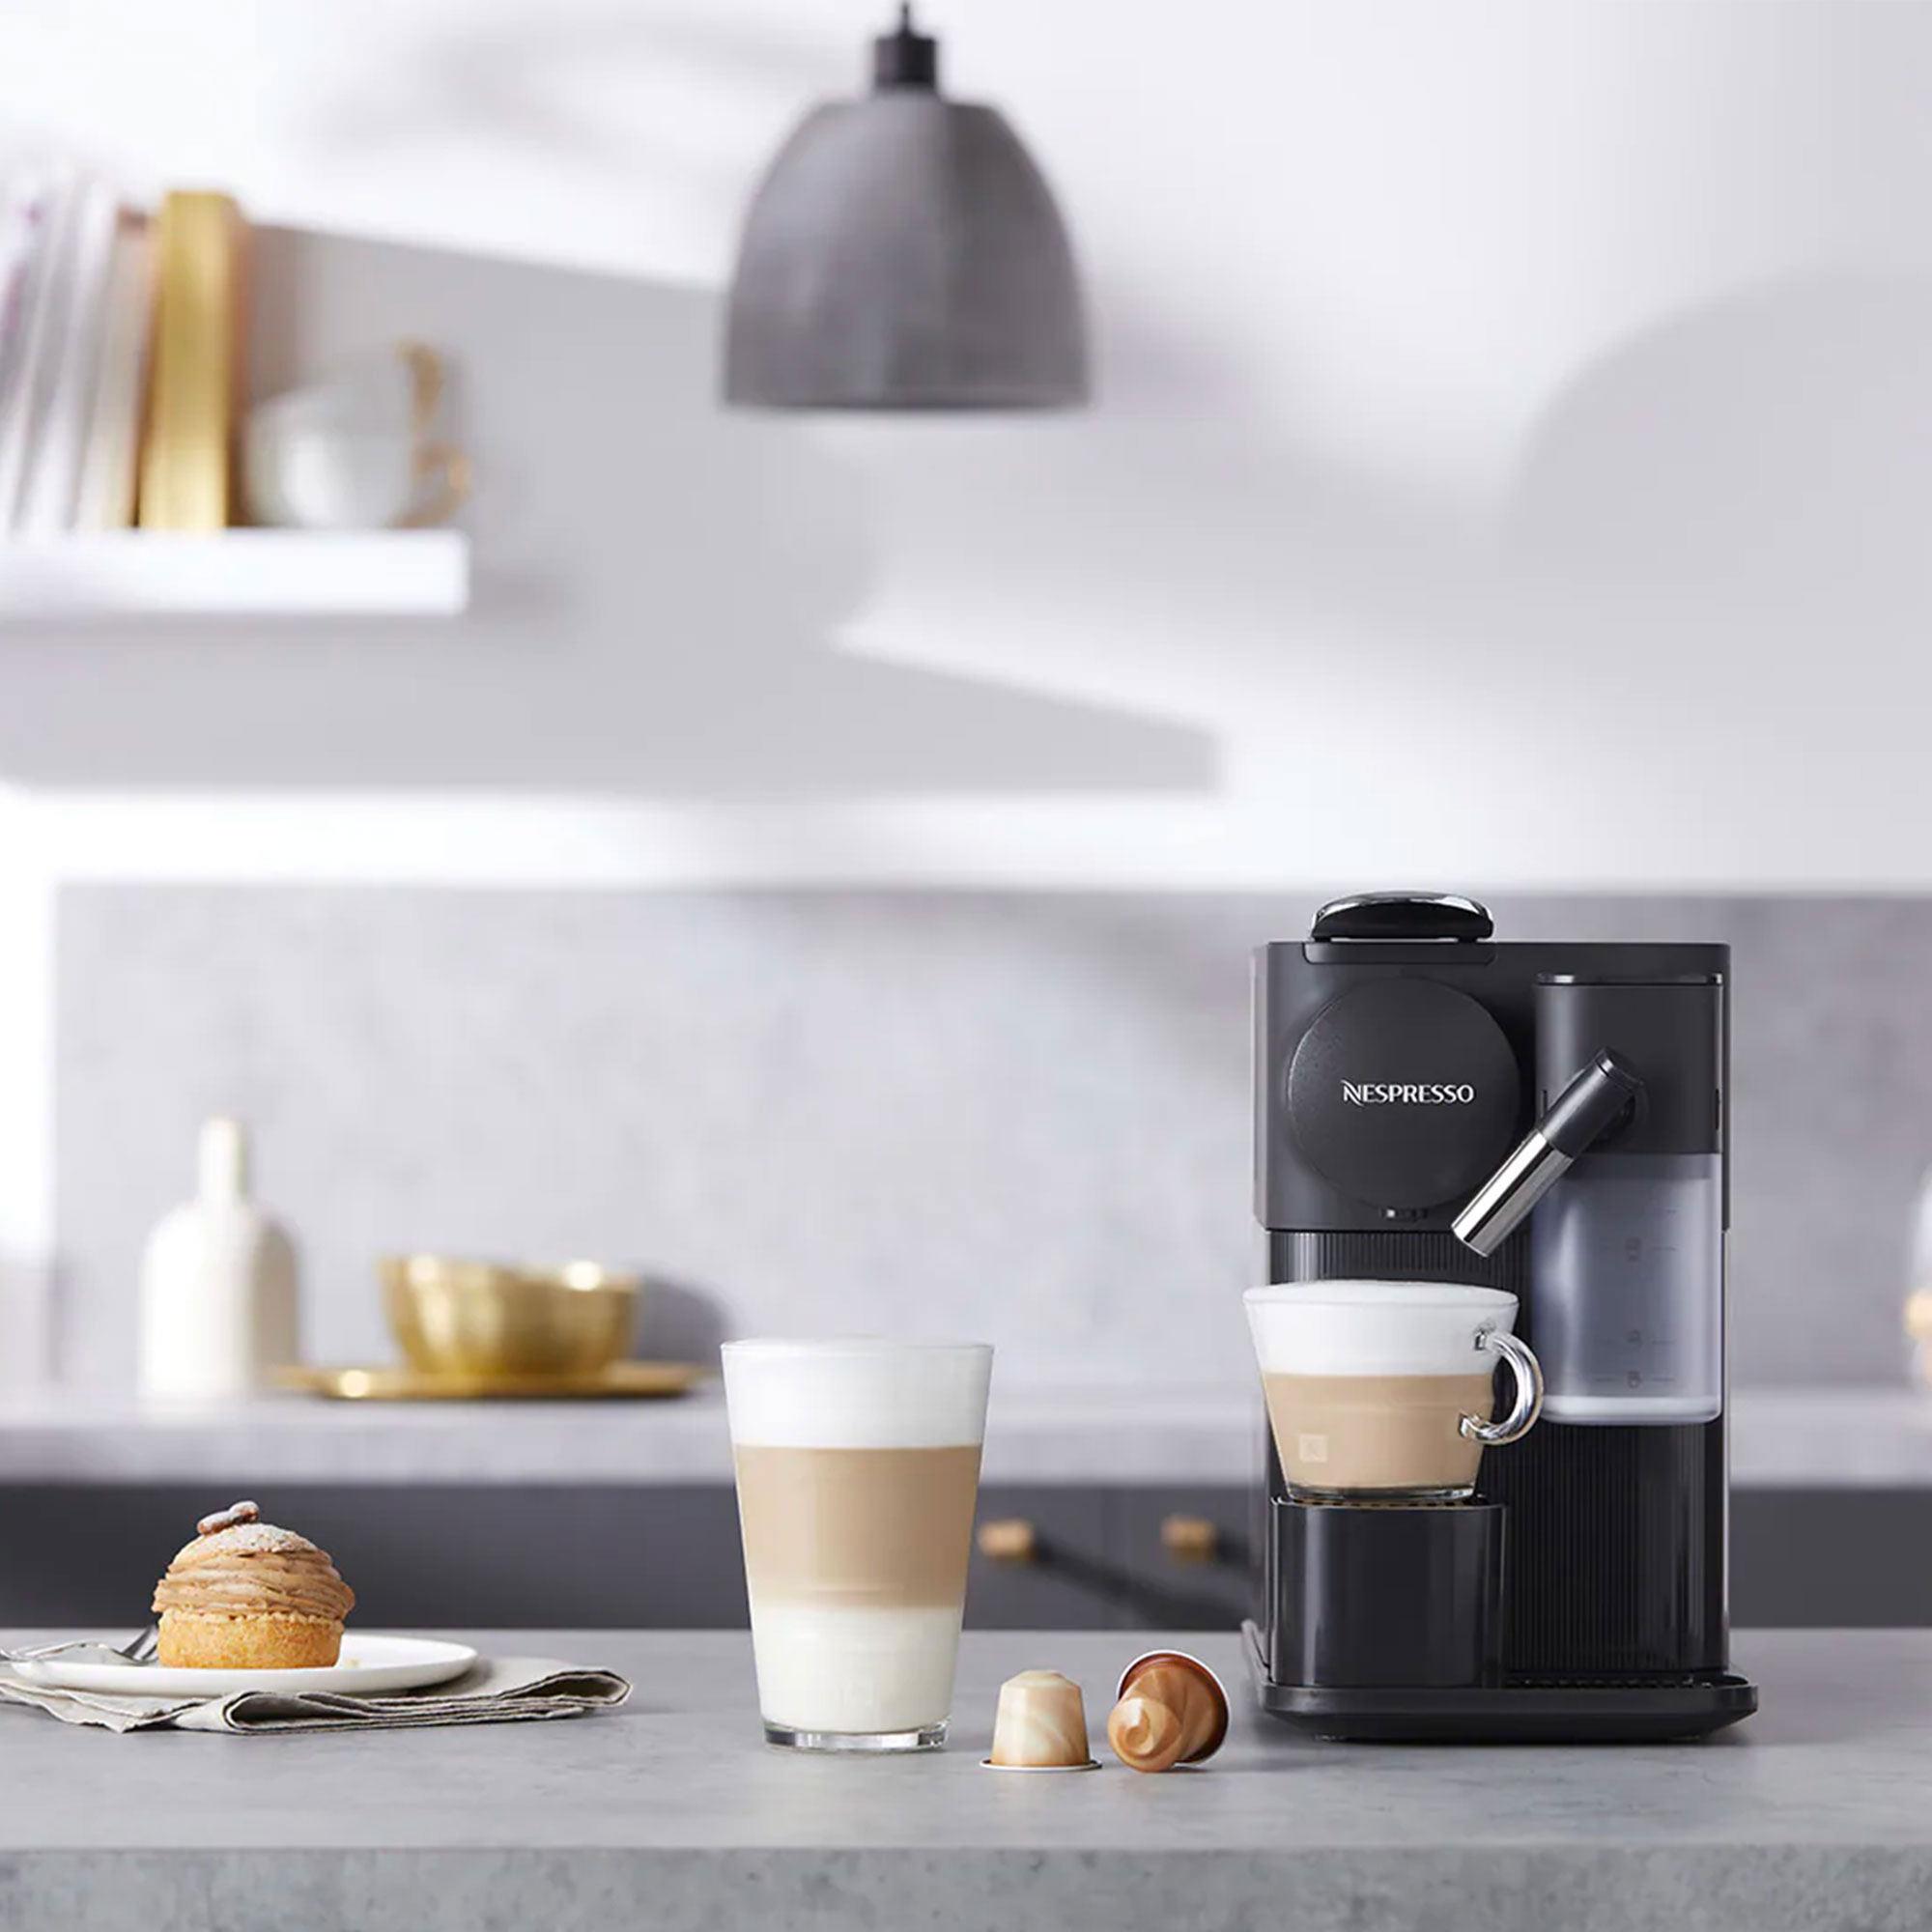 DeLonghi Nespresso Lattissima One EN510B Coffee Machine Black Image 6